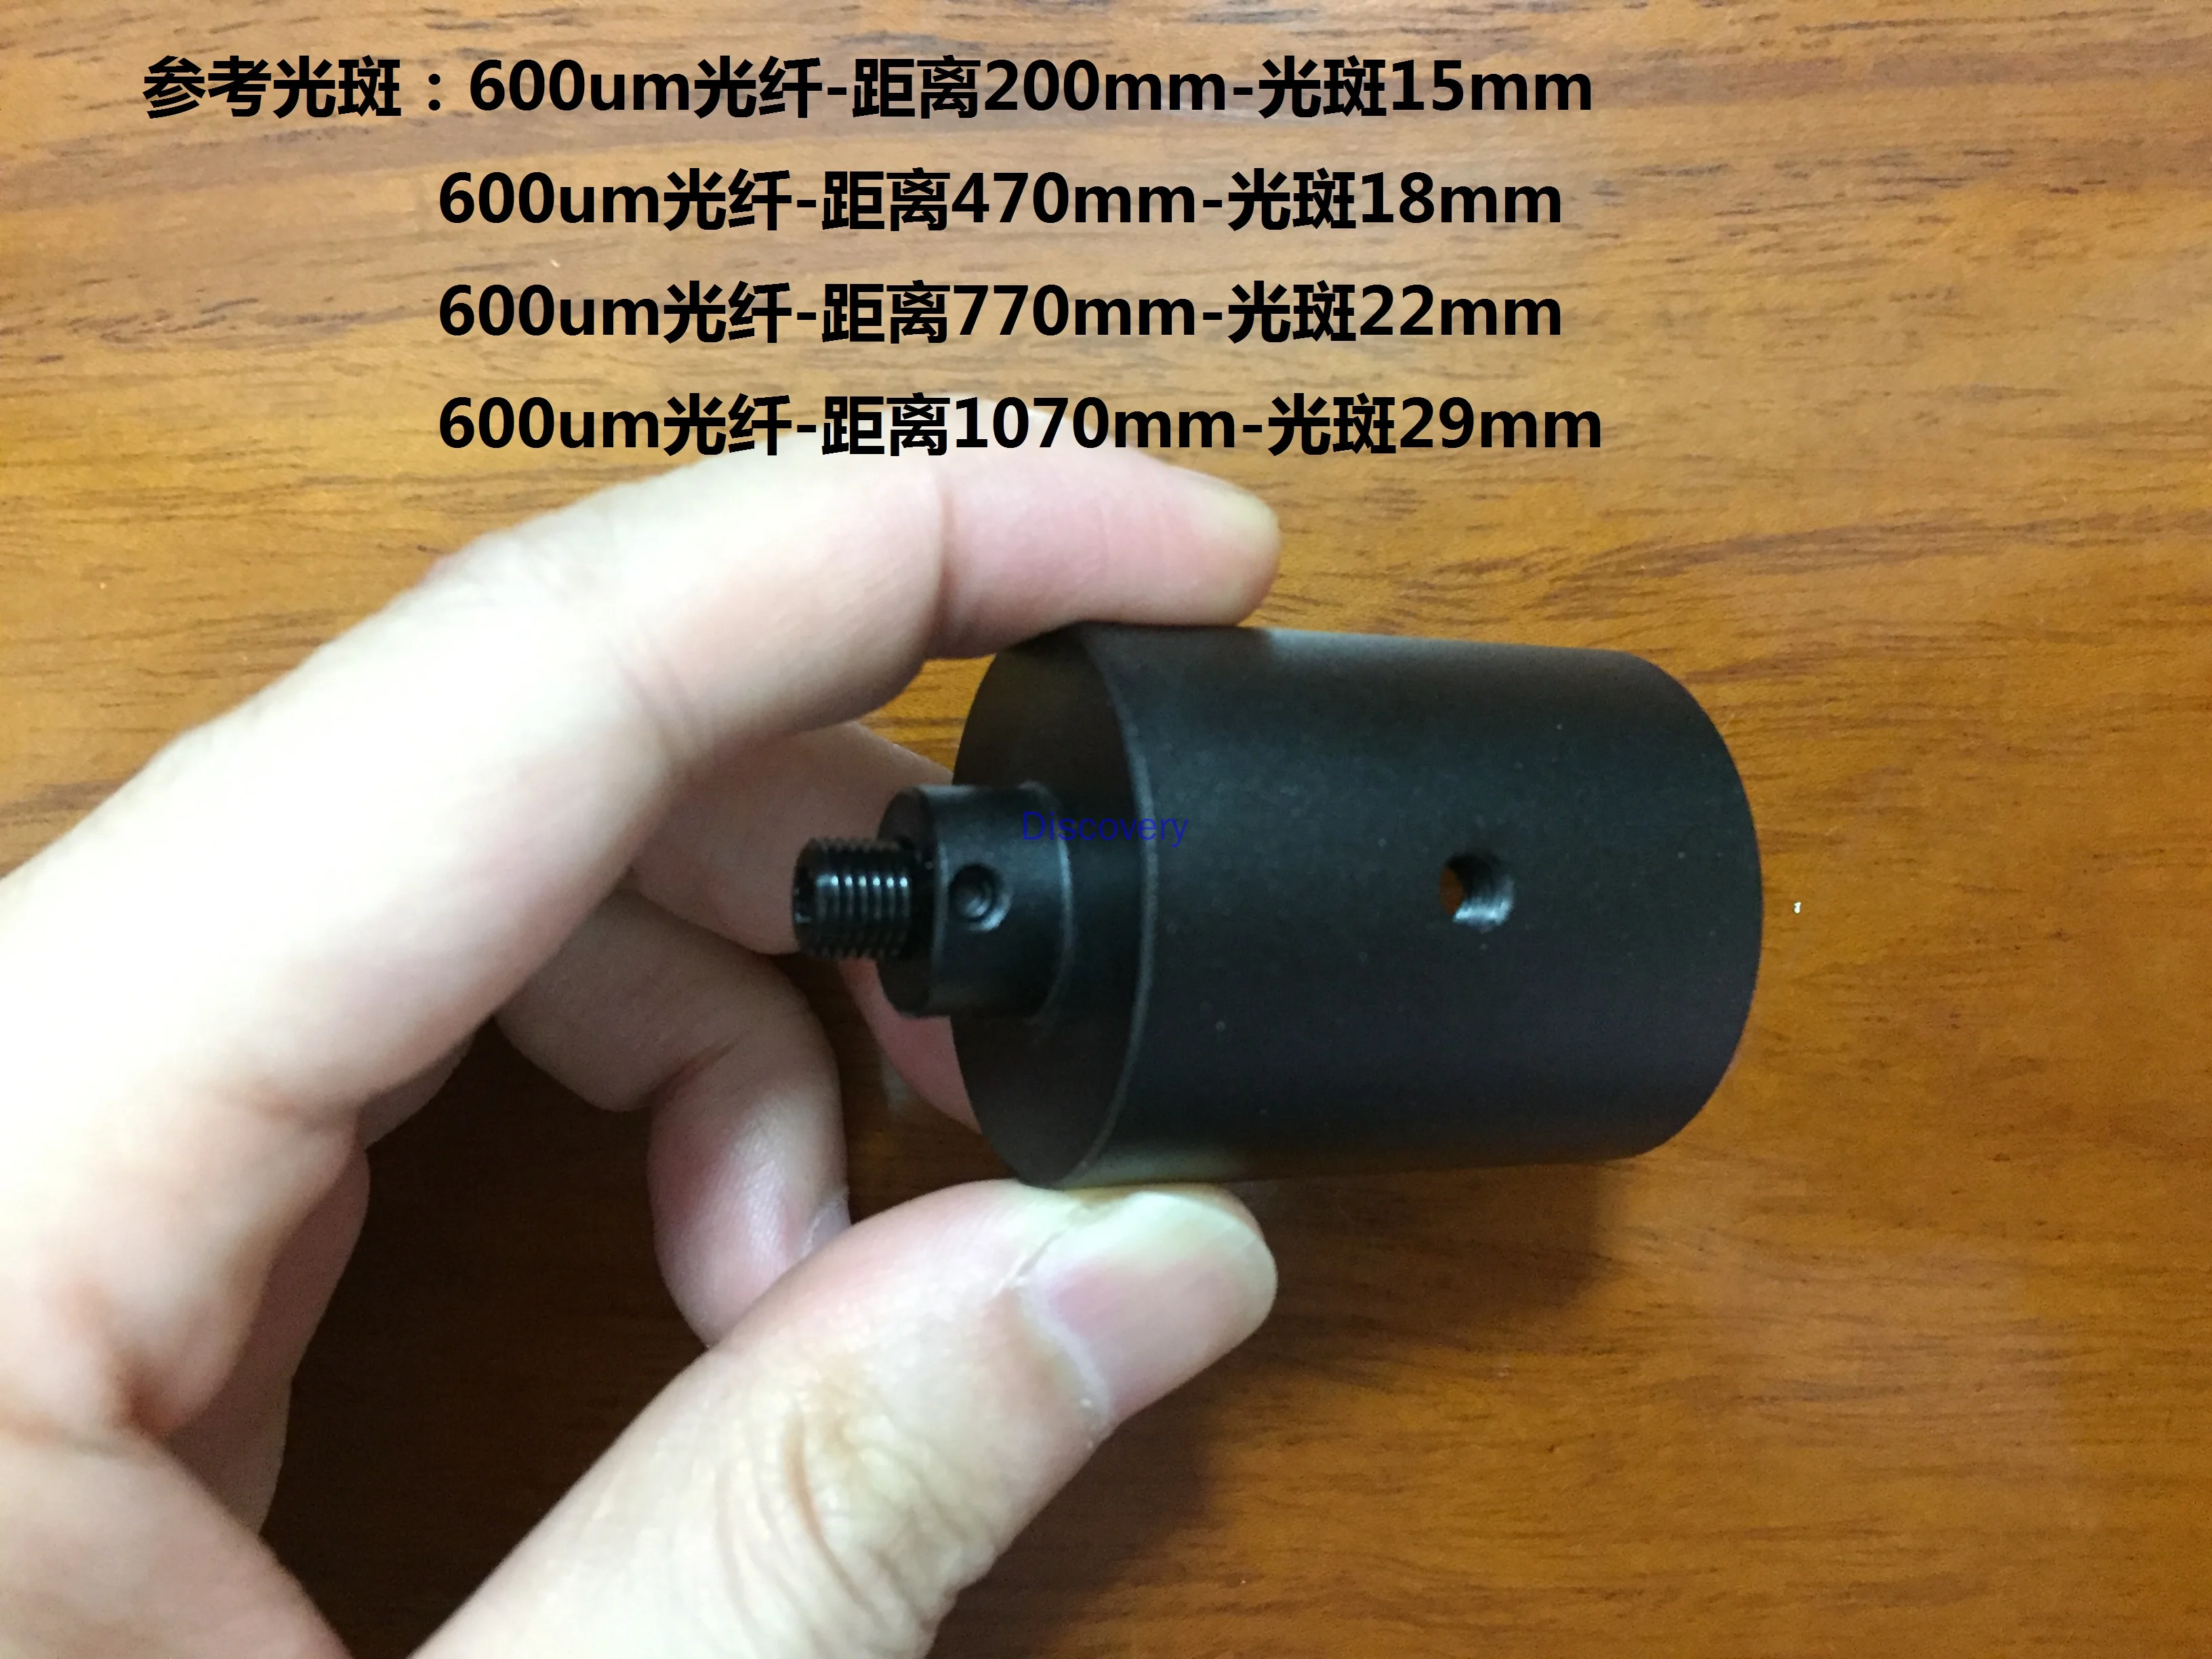 

Optical Fiber Collimator 94UV-30 Quartz Optical Fiber Focusing Lens Coupling SMA905 Lens Focal Length 30mm